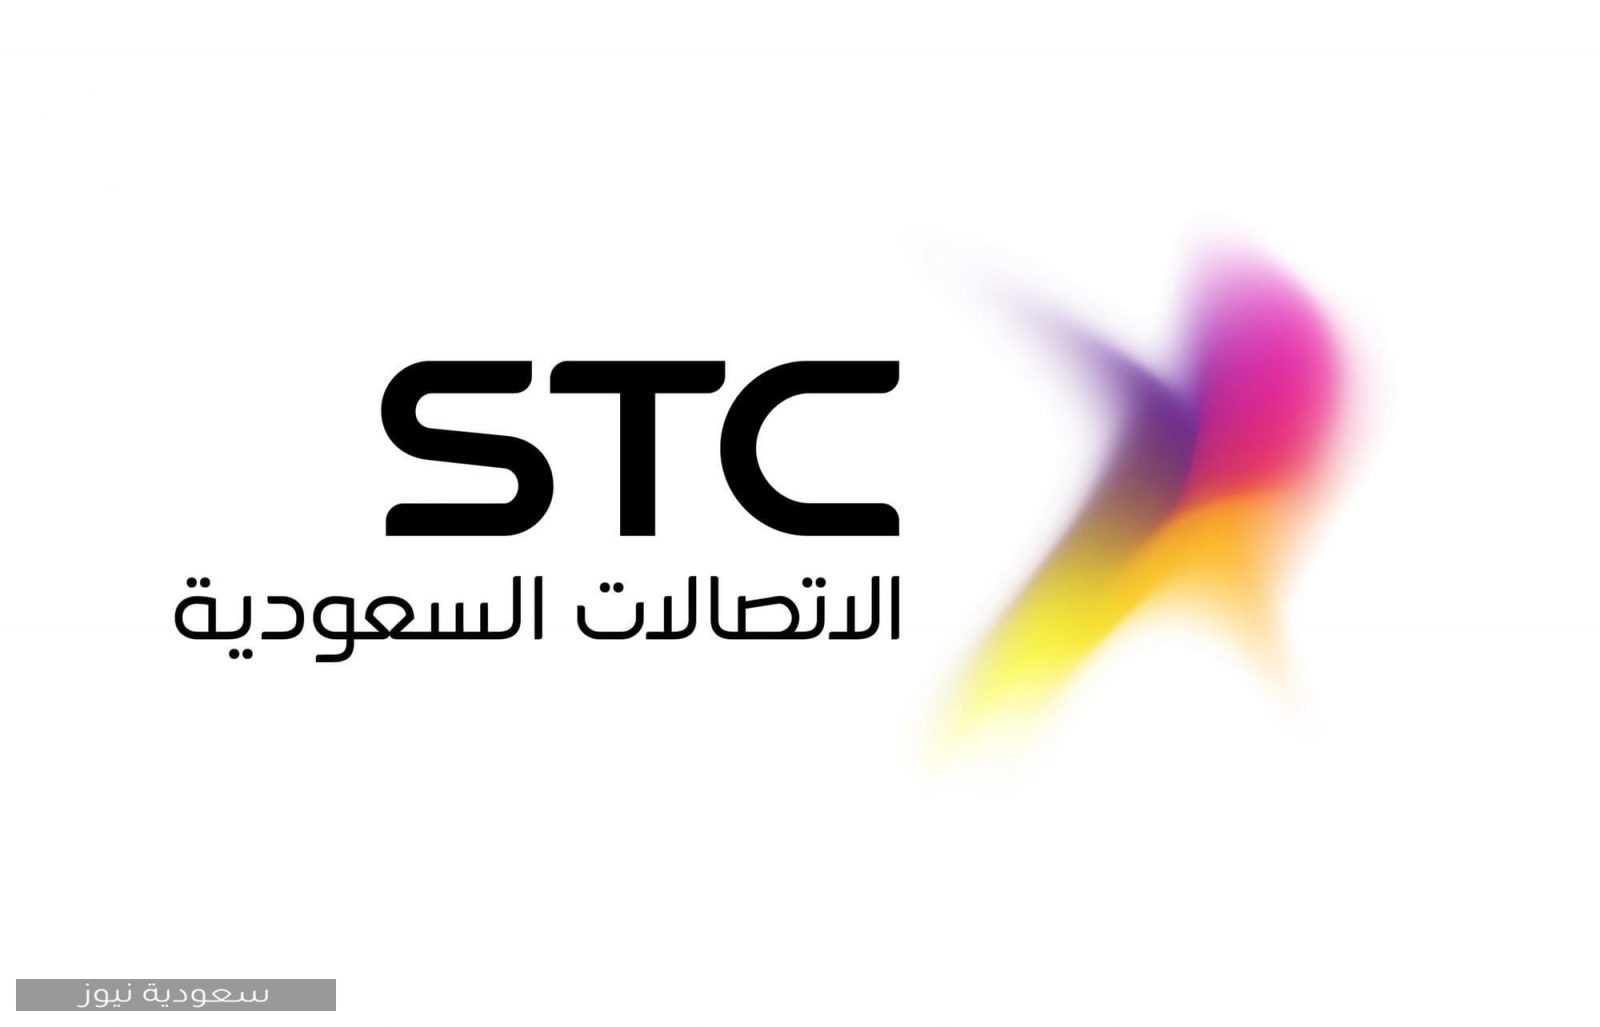 موقع stc الرسمي والخدمات التي يقدمها